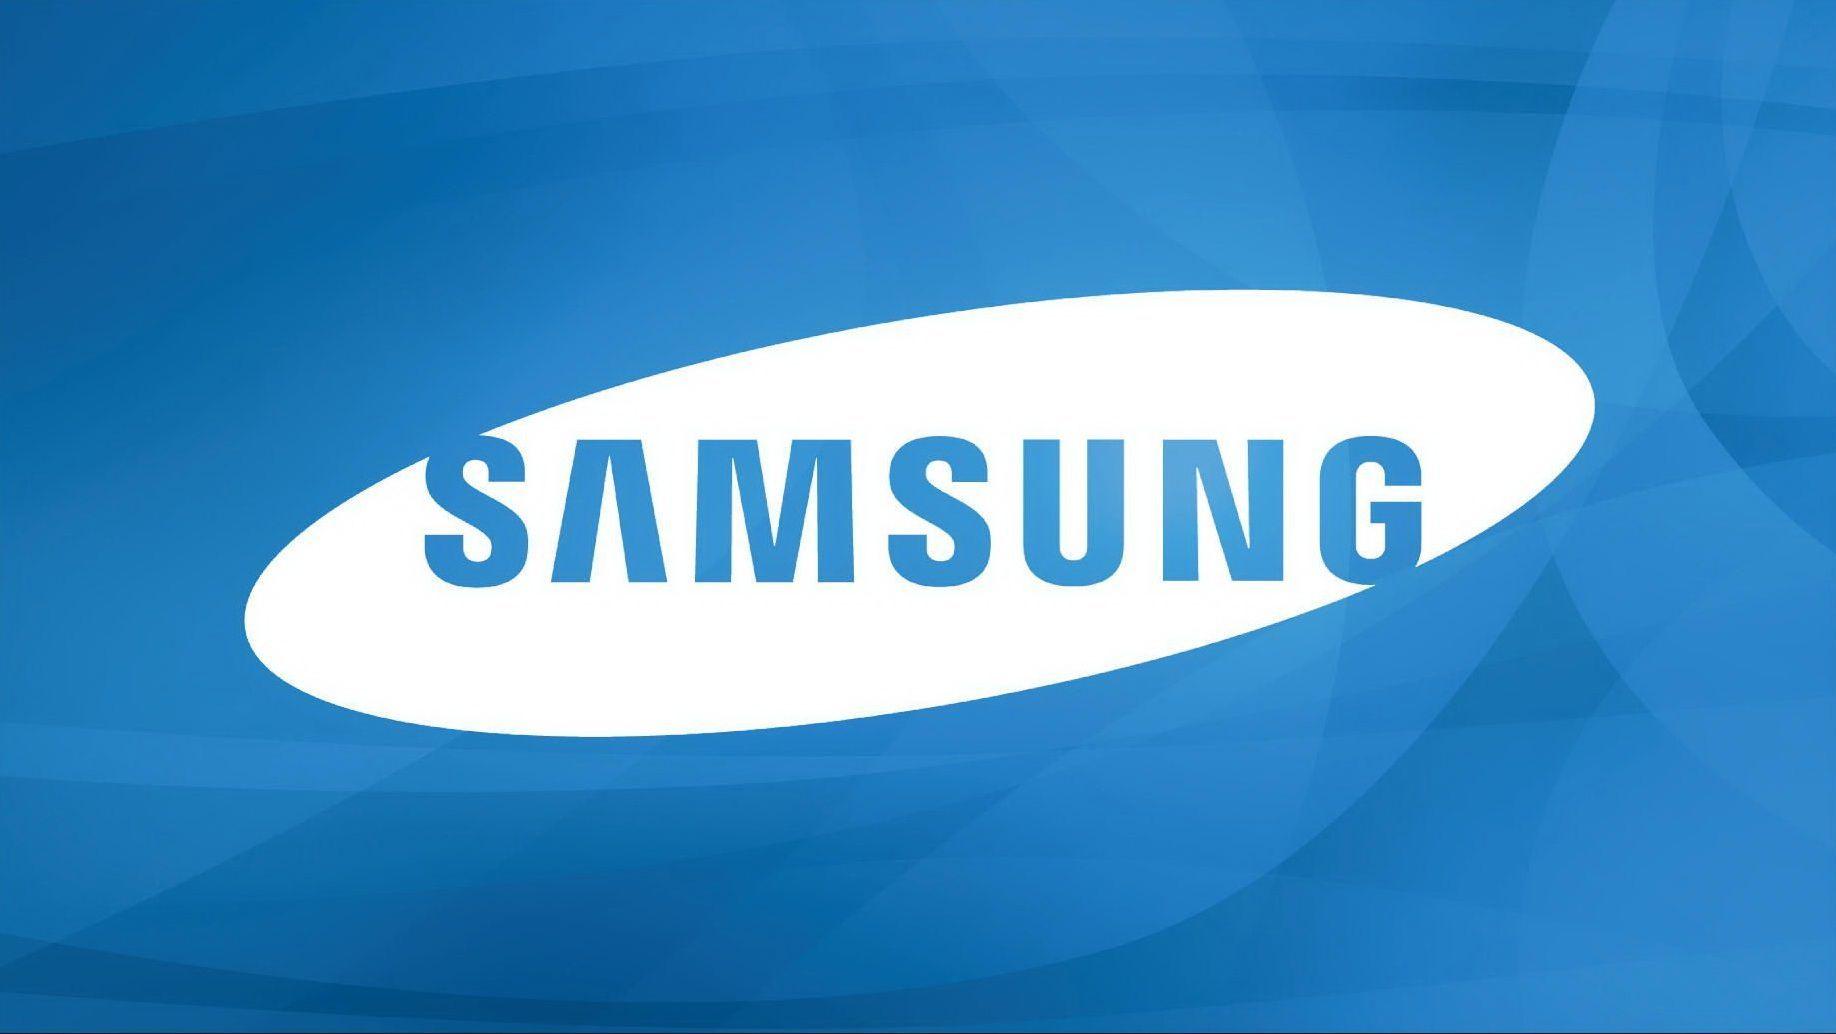 Samsung TV Logo - Samsung LED TV Logo Wallpaper